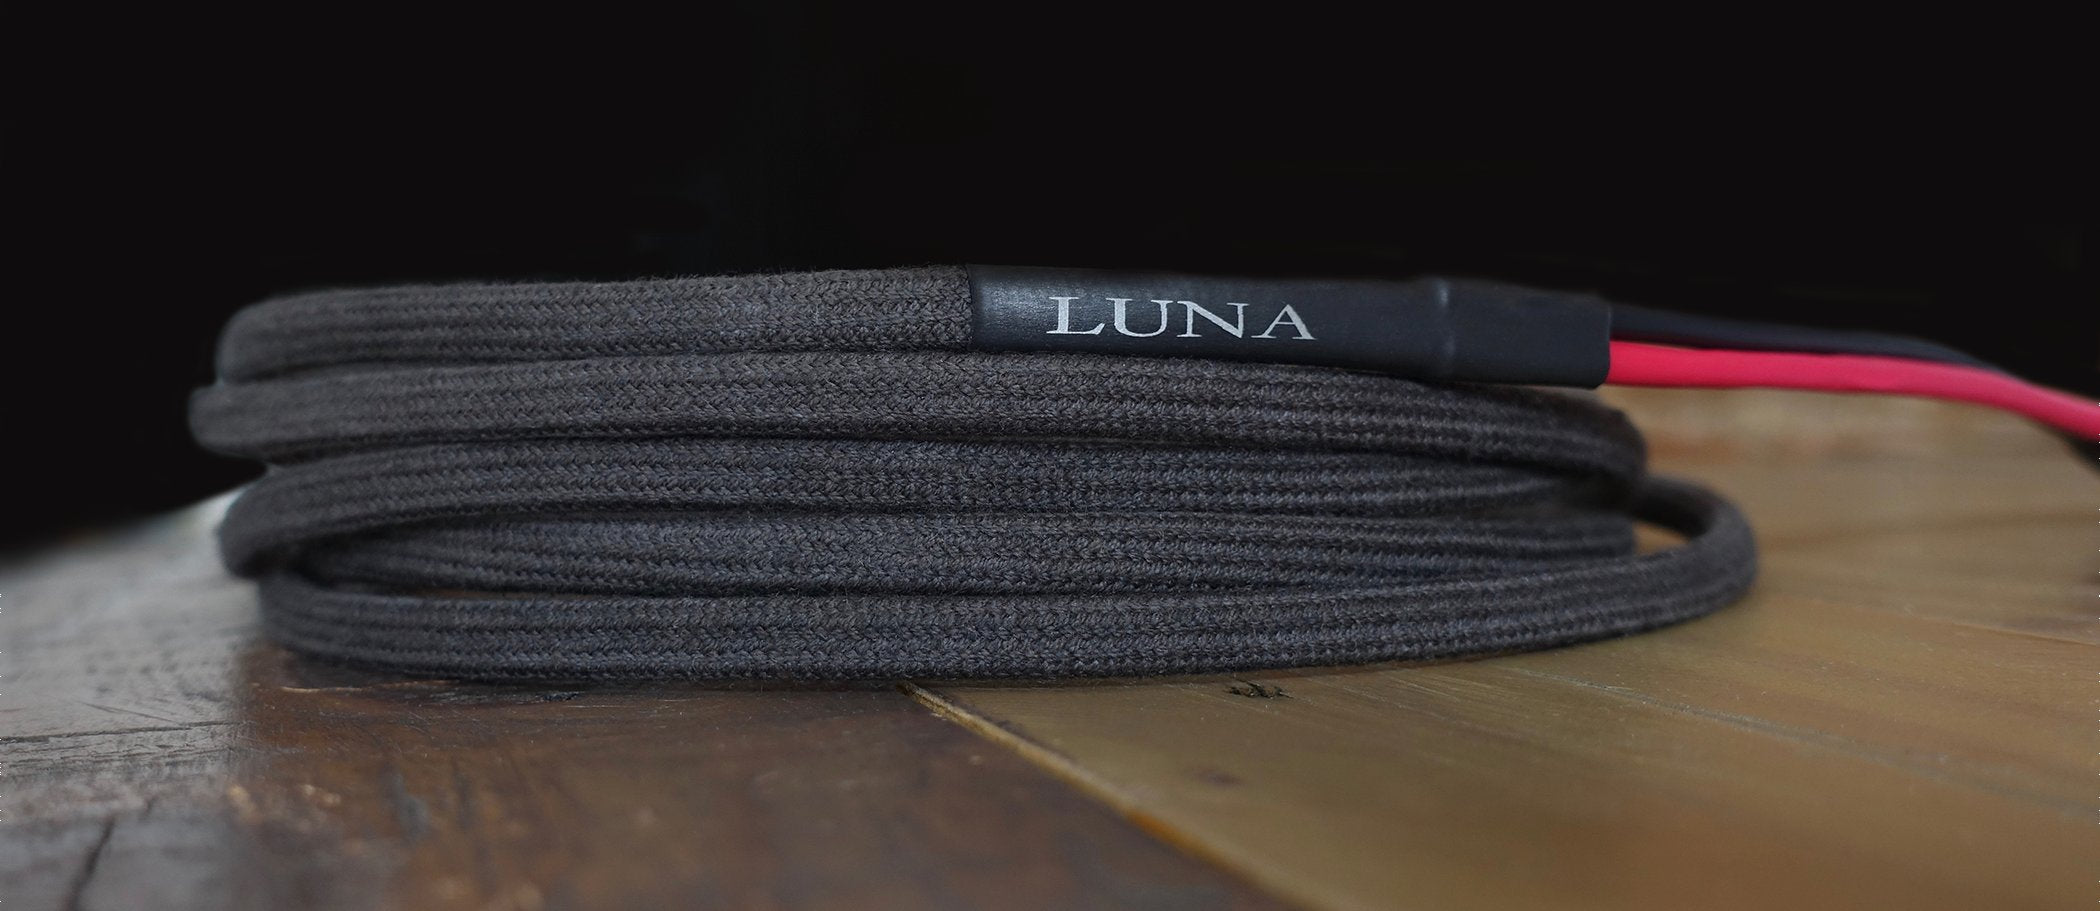 Luna Cables Secteur Gris - Rhapsody Hifi - La hifi autrement